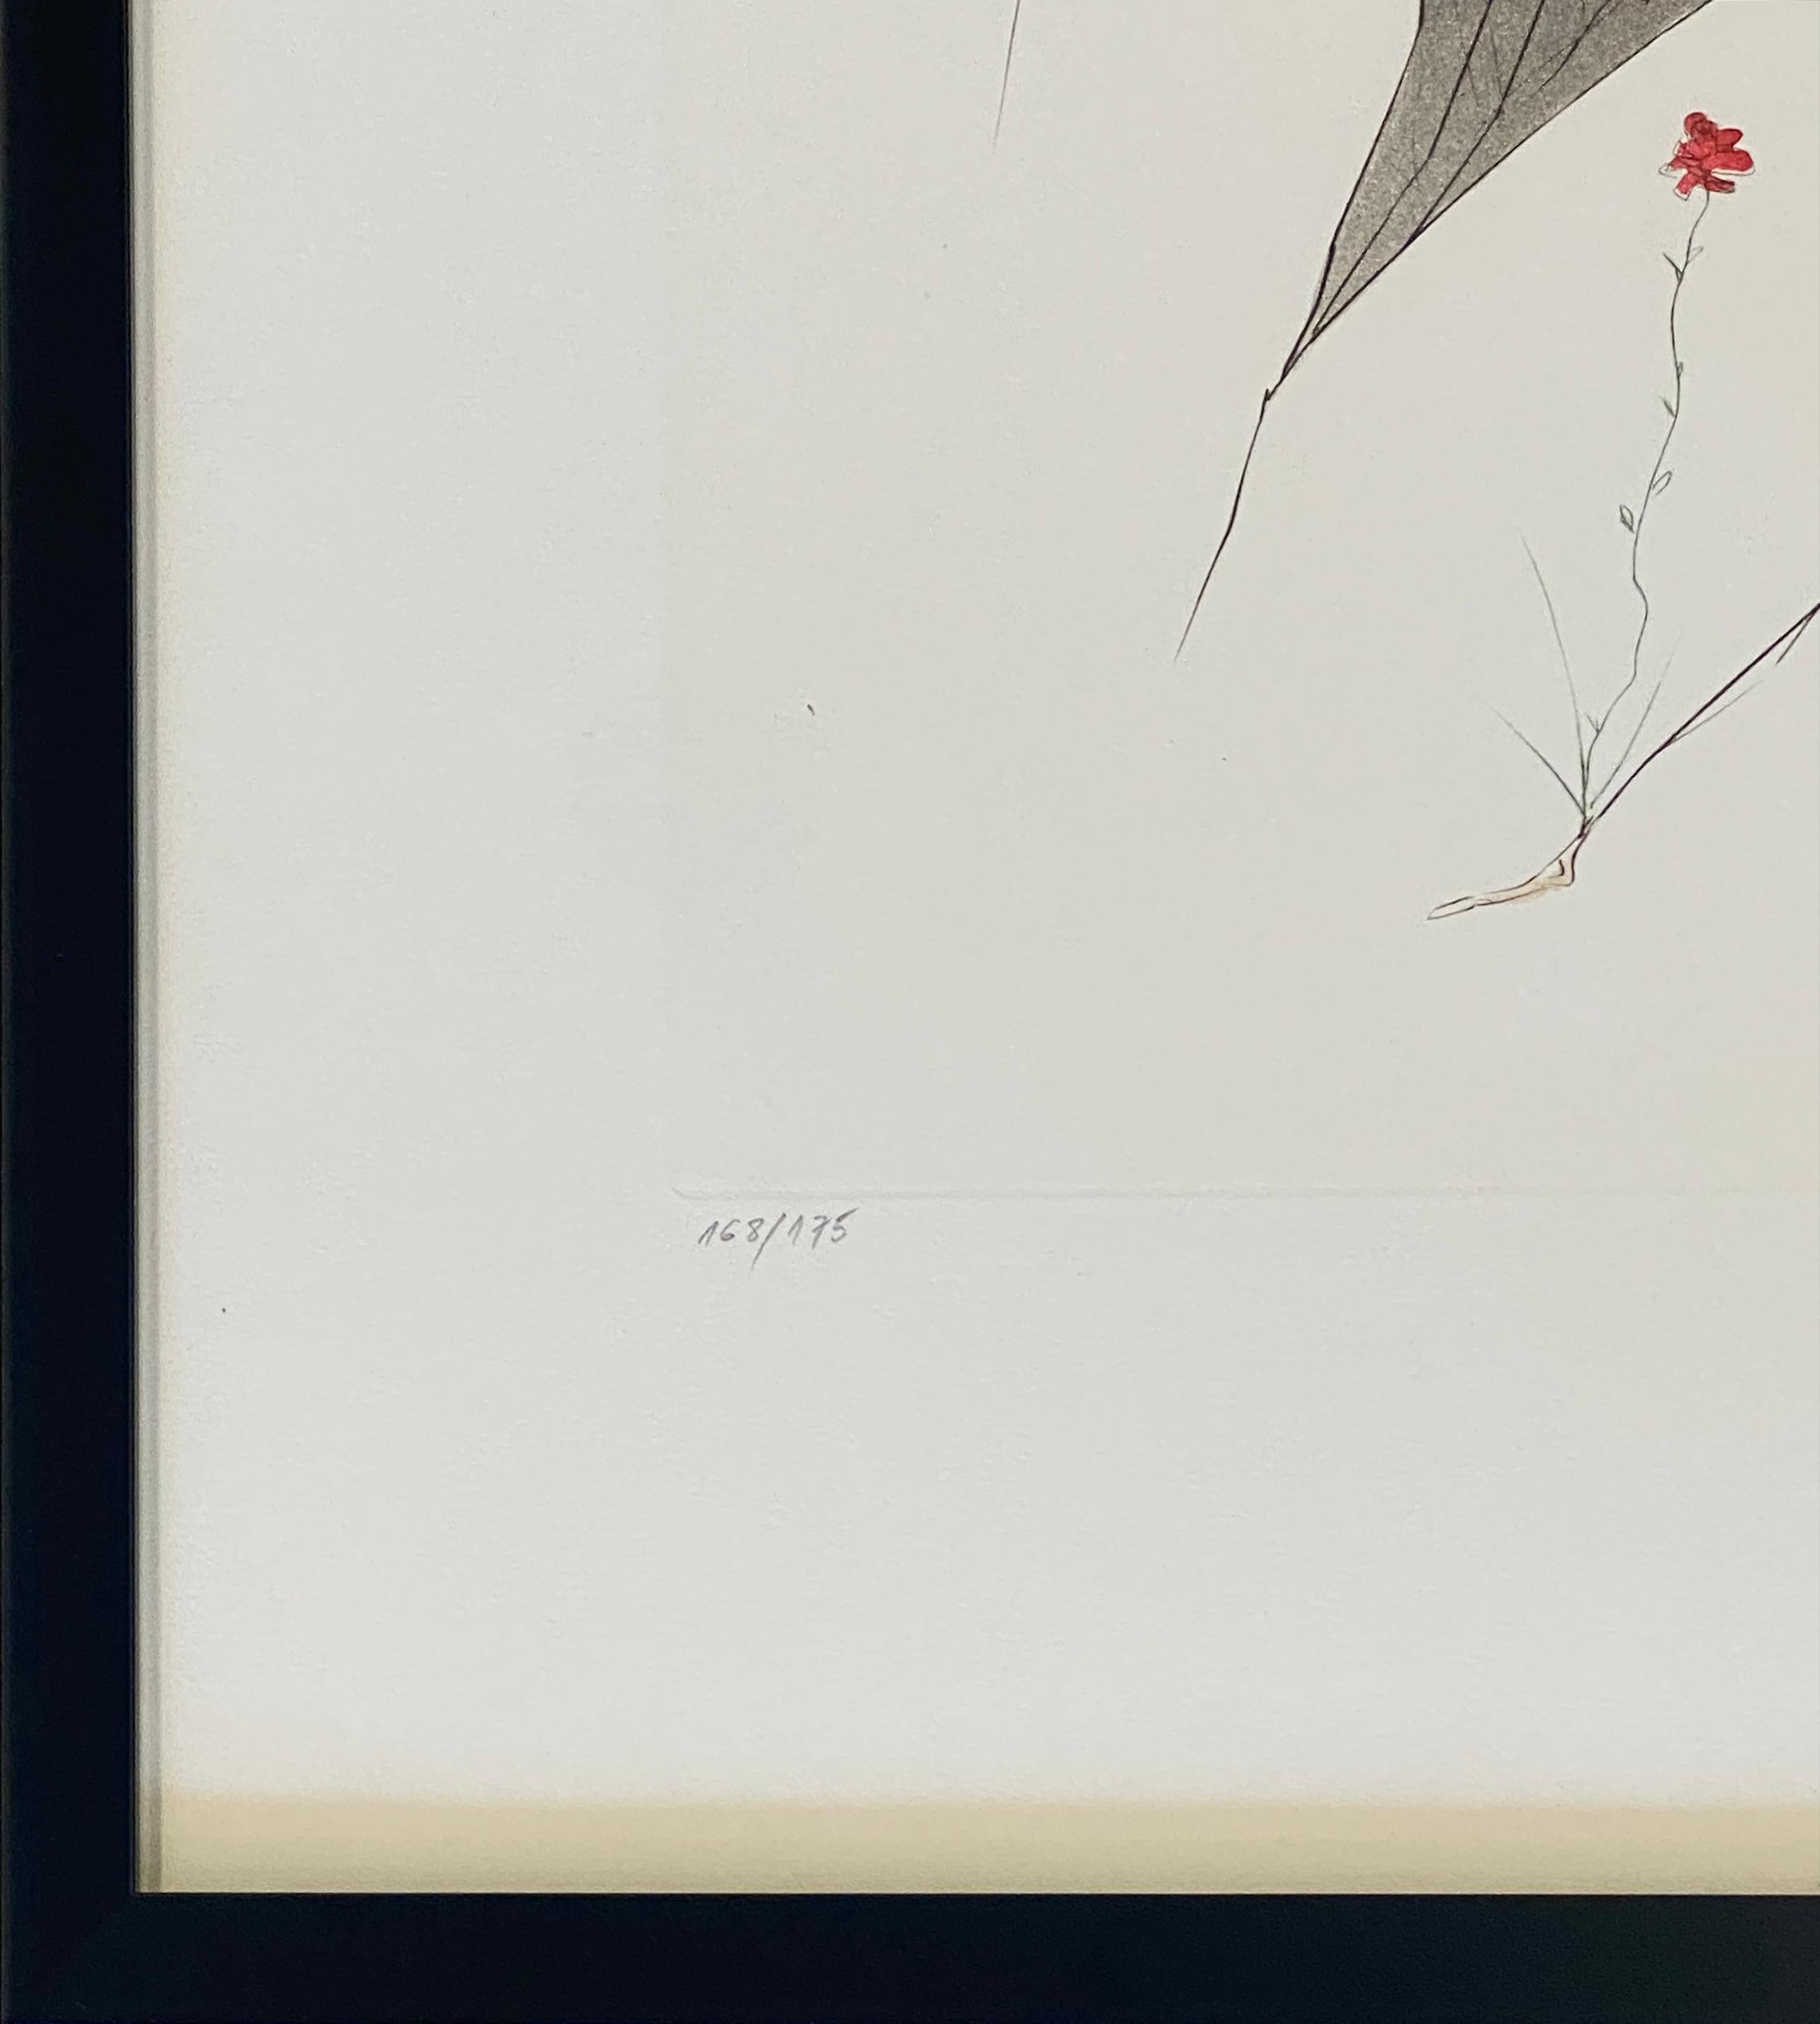 L'Ange de la Melancolie from the Aurelia Suite (Angel of Melancholy) - Gray Print by Salvador Dalí